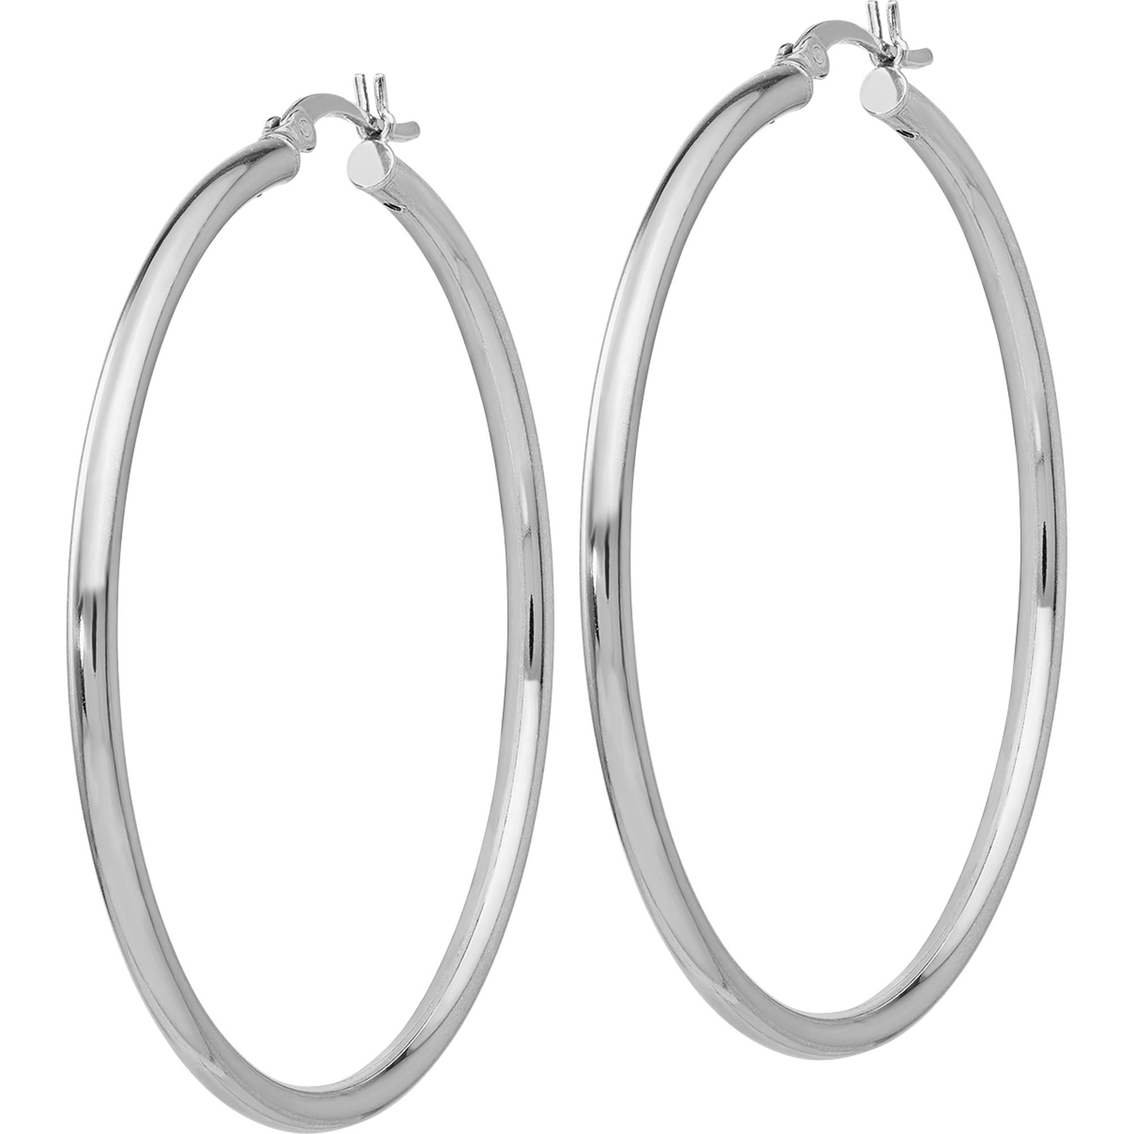 Sterling Silver Polished Hinged Hoop Earrings - Image 2 of 2